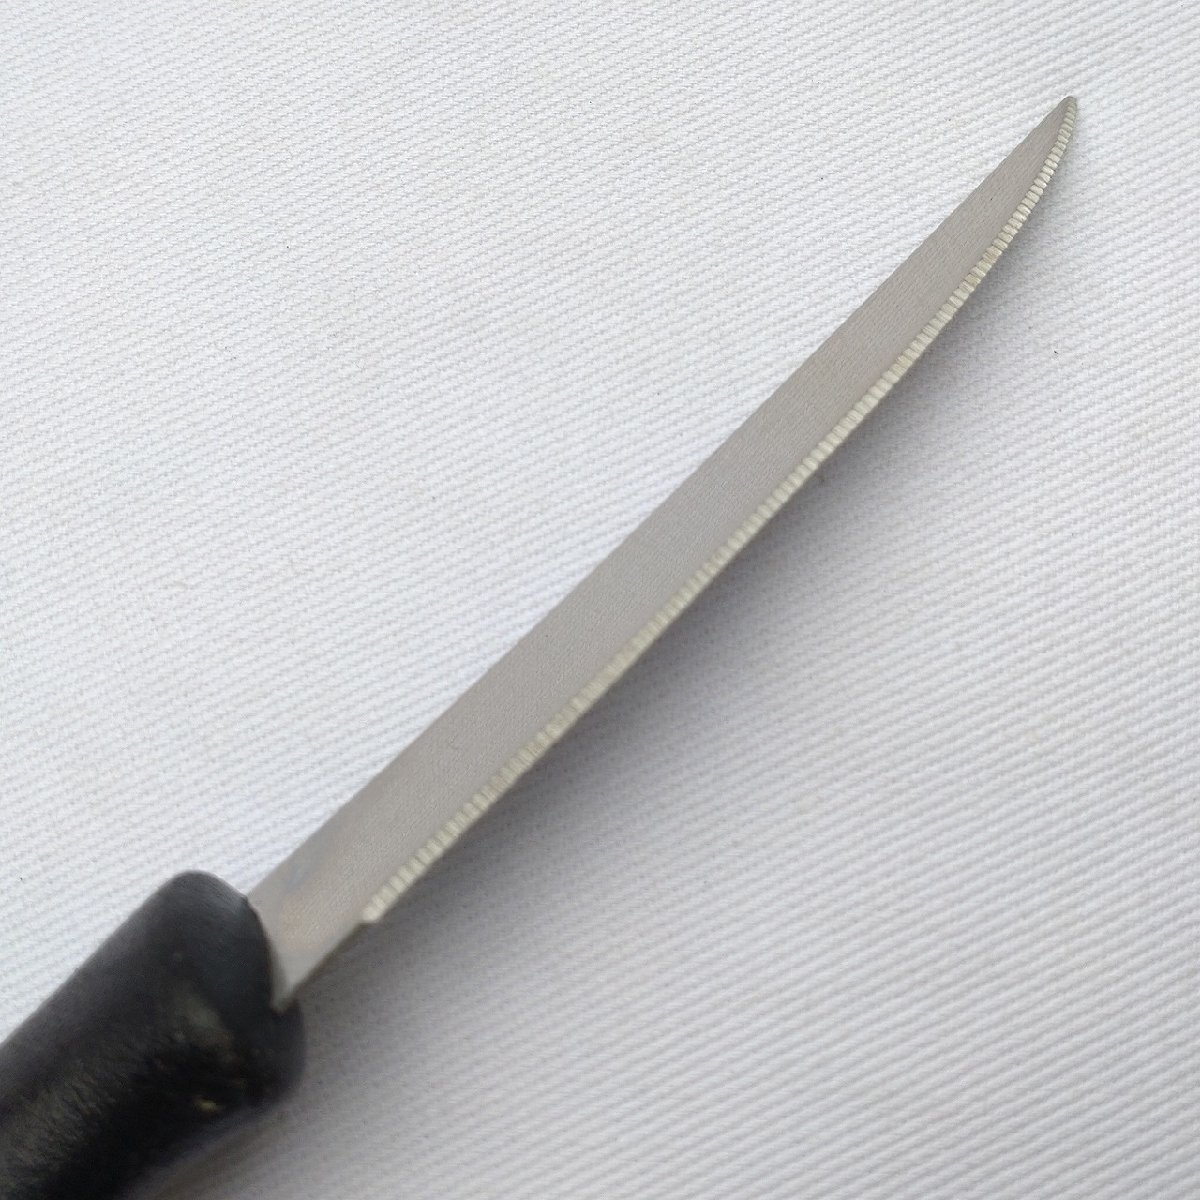  мелкий нож столовый нож сыр нож NIROSTA лезвие длина примерно 110. европейского типа кухонный нож маленький размер кухонный нож . шт ножи режущий инструмент [9667]